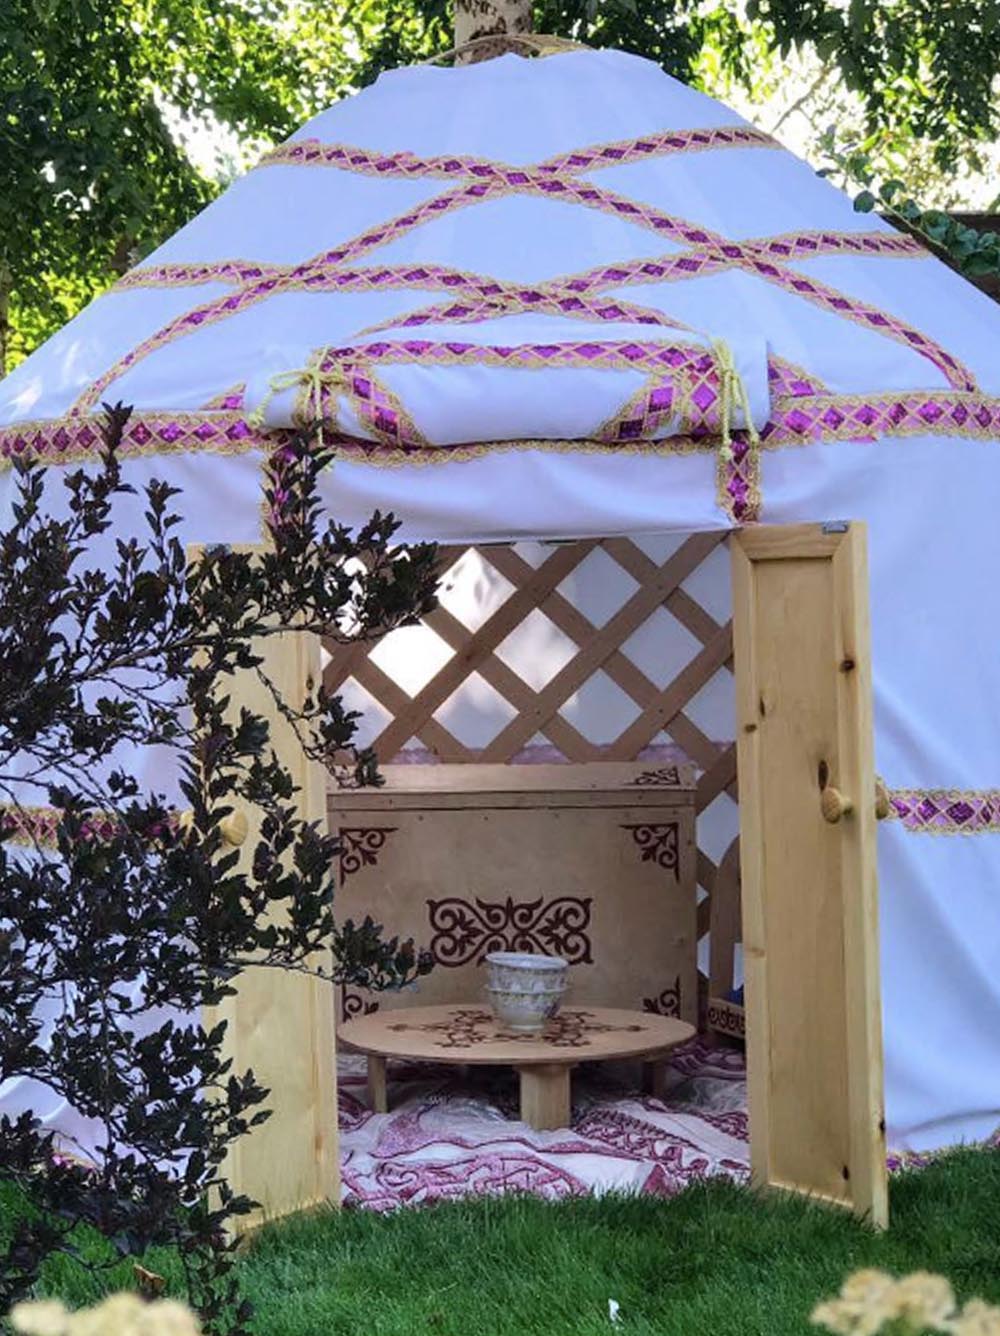 Kazakh Small Yurt Ger handcraft for children